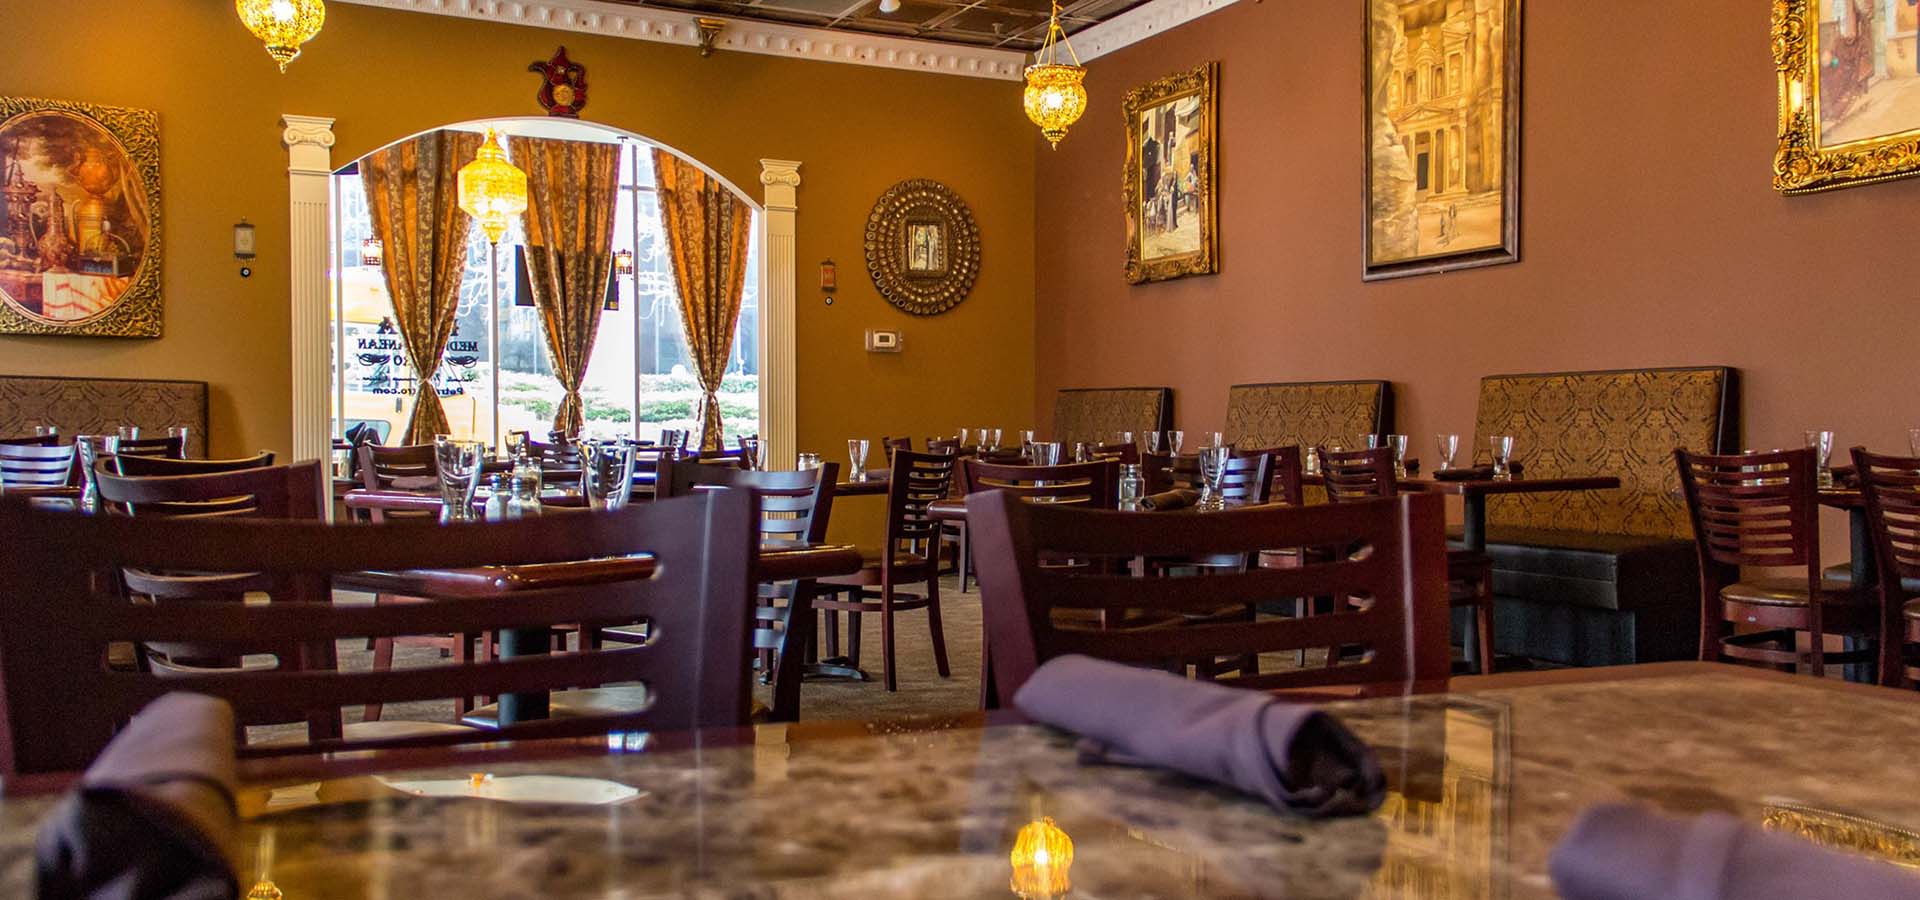 Interior view of a Mediterrean restaurant.